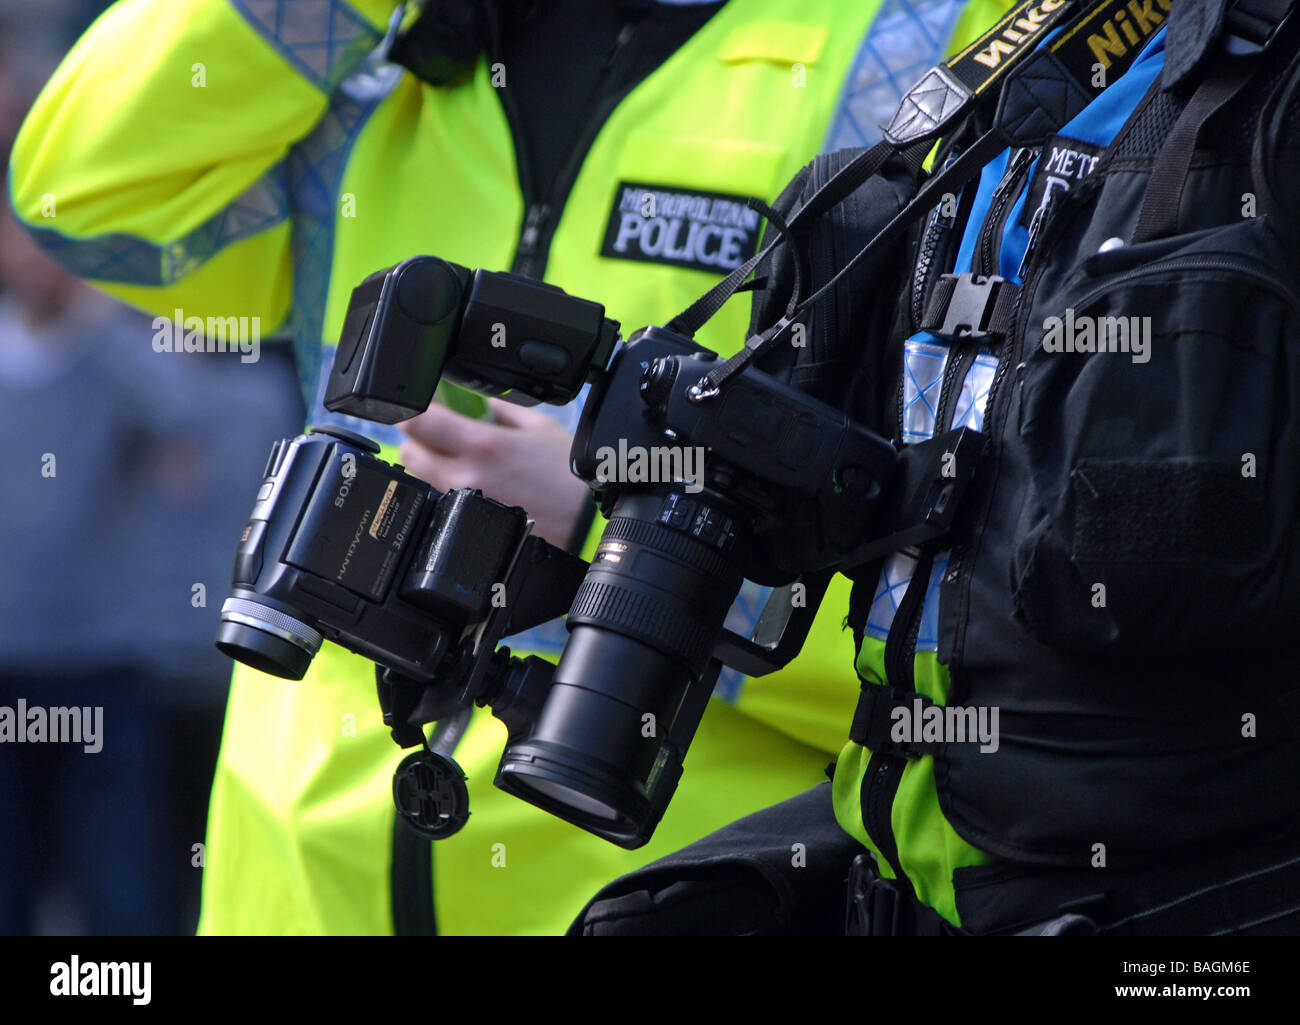 L'unité de surveillance de la police, du Sommet du G20, Londres, Angleterre, Royaume-Uni Banque D'Images